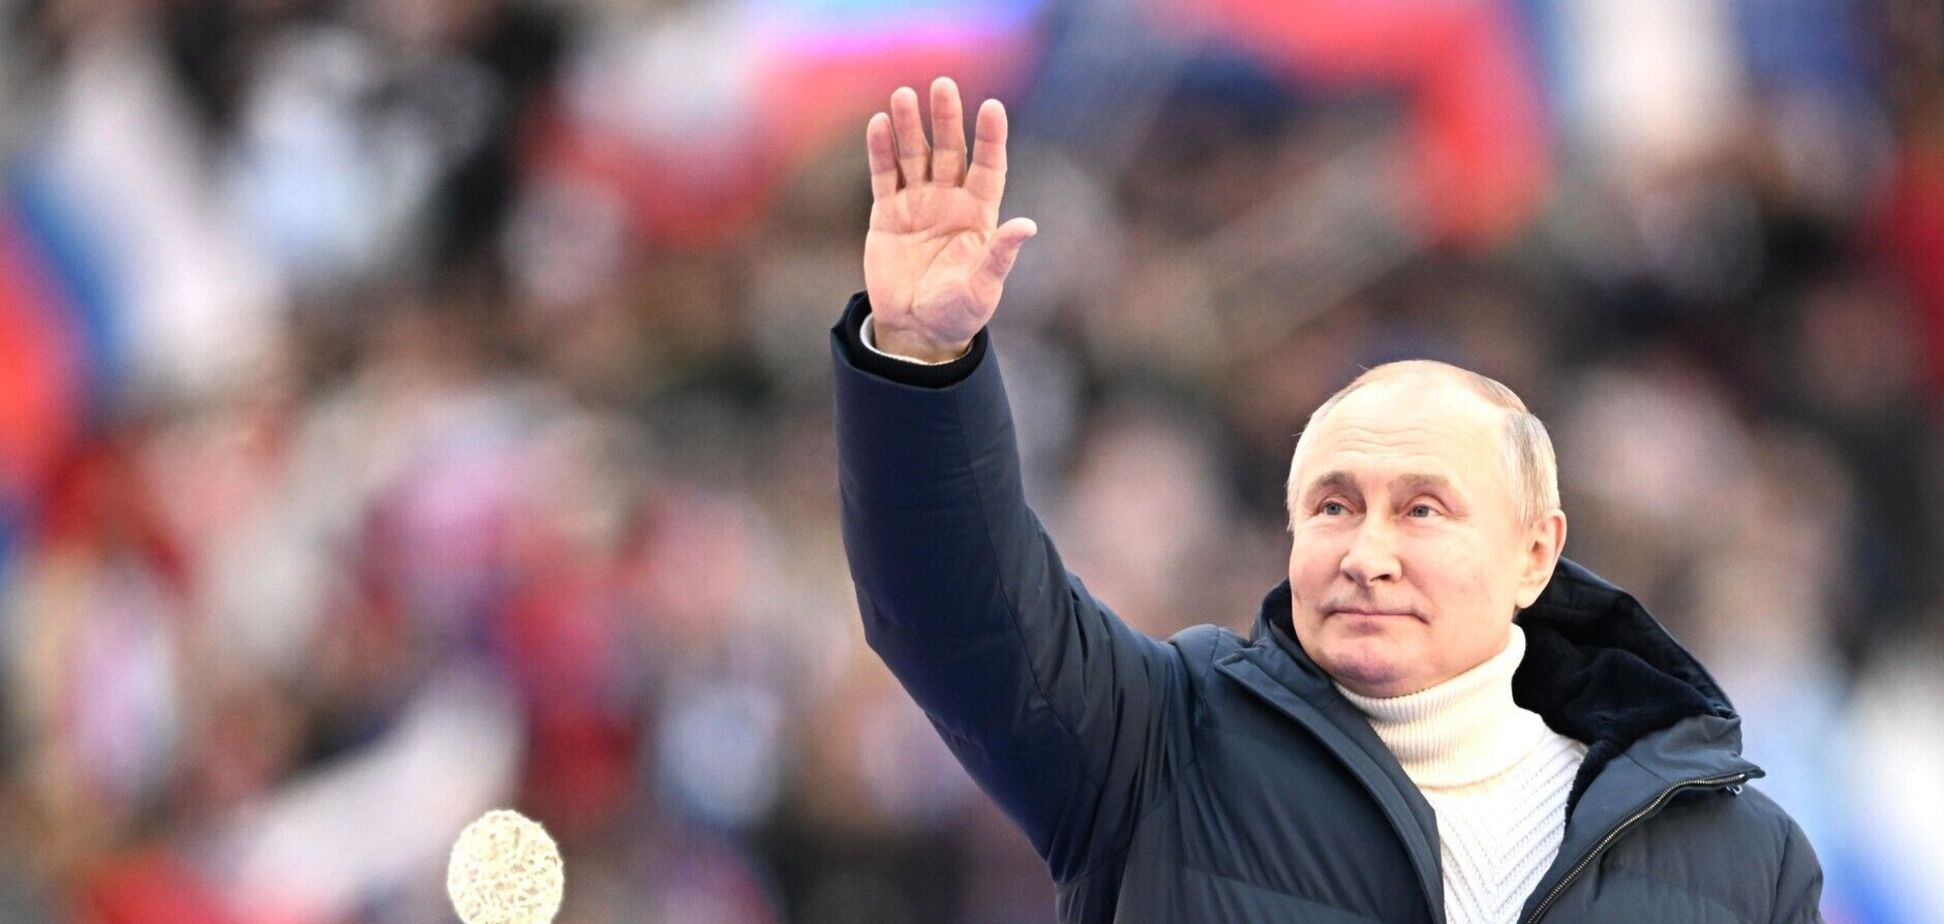 Є три нюанси: психолог розповіла, що не так з промовою Путіна на концерті в Лужниках